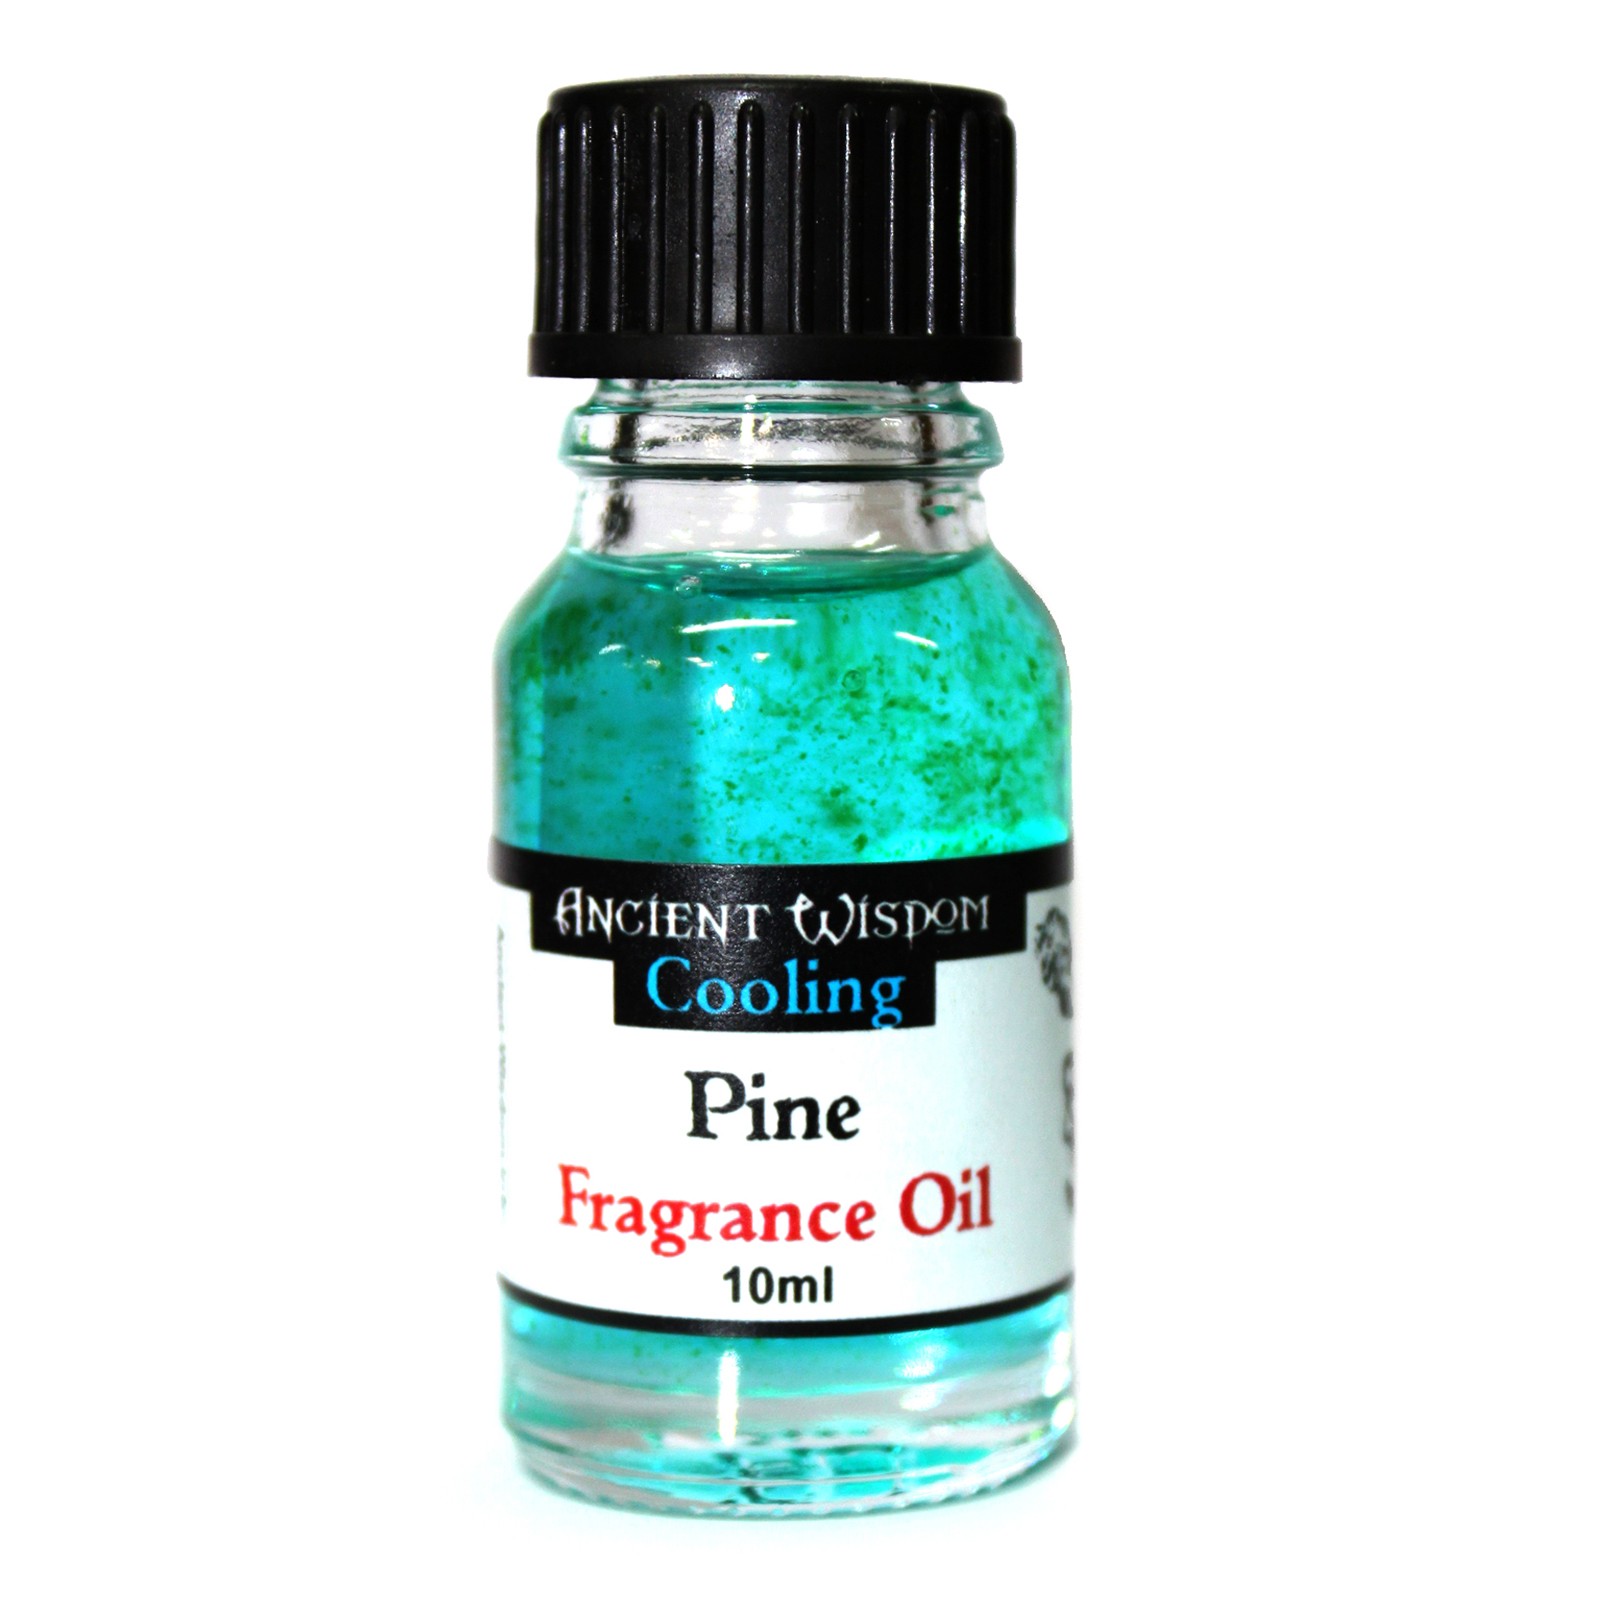 2 x 10ml Pine Fragrance Oil Bottles